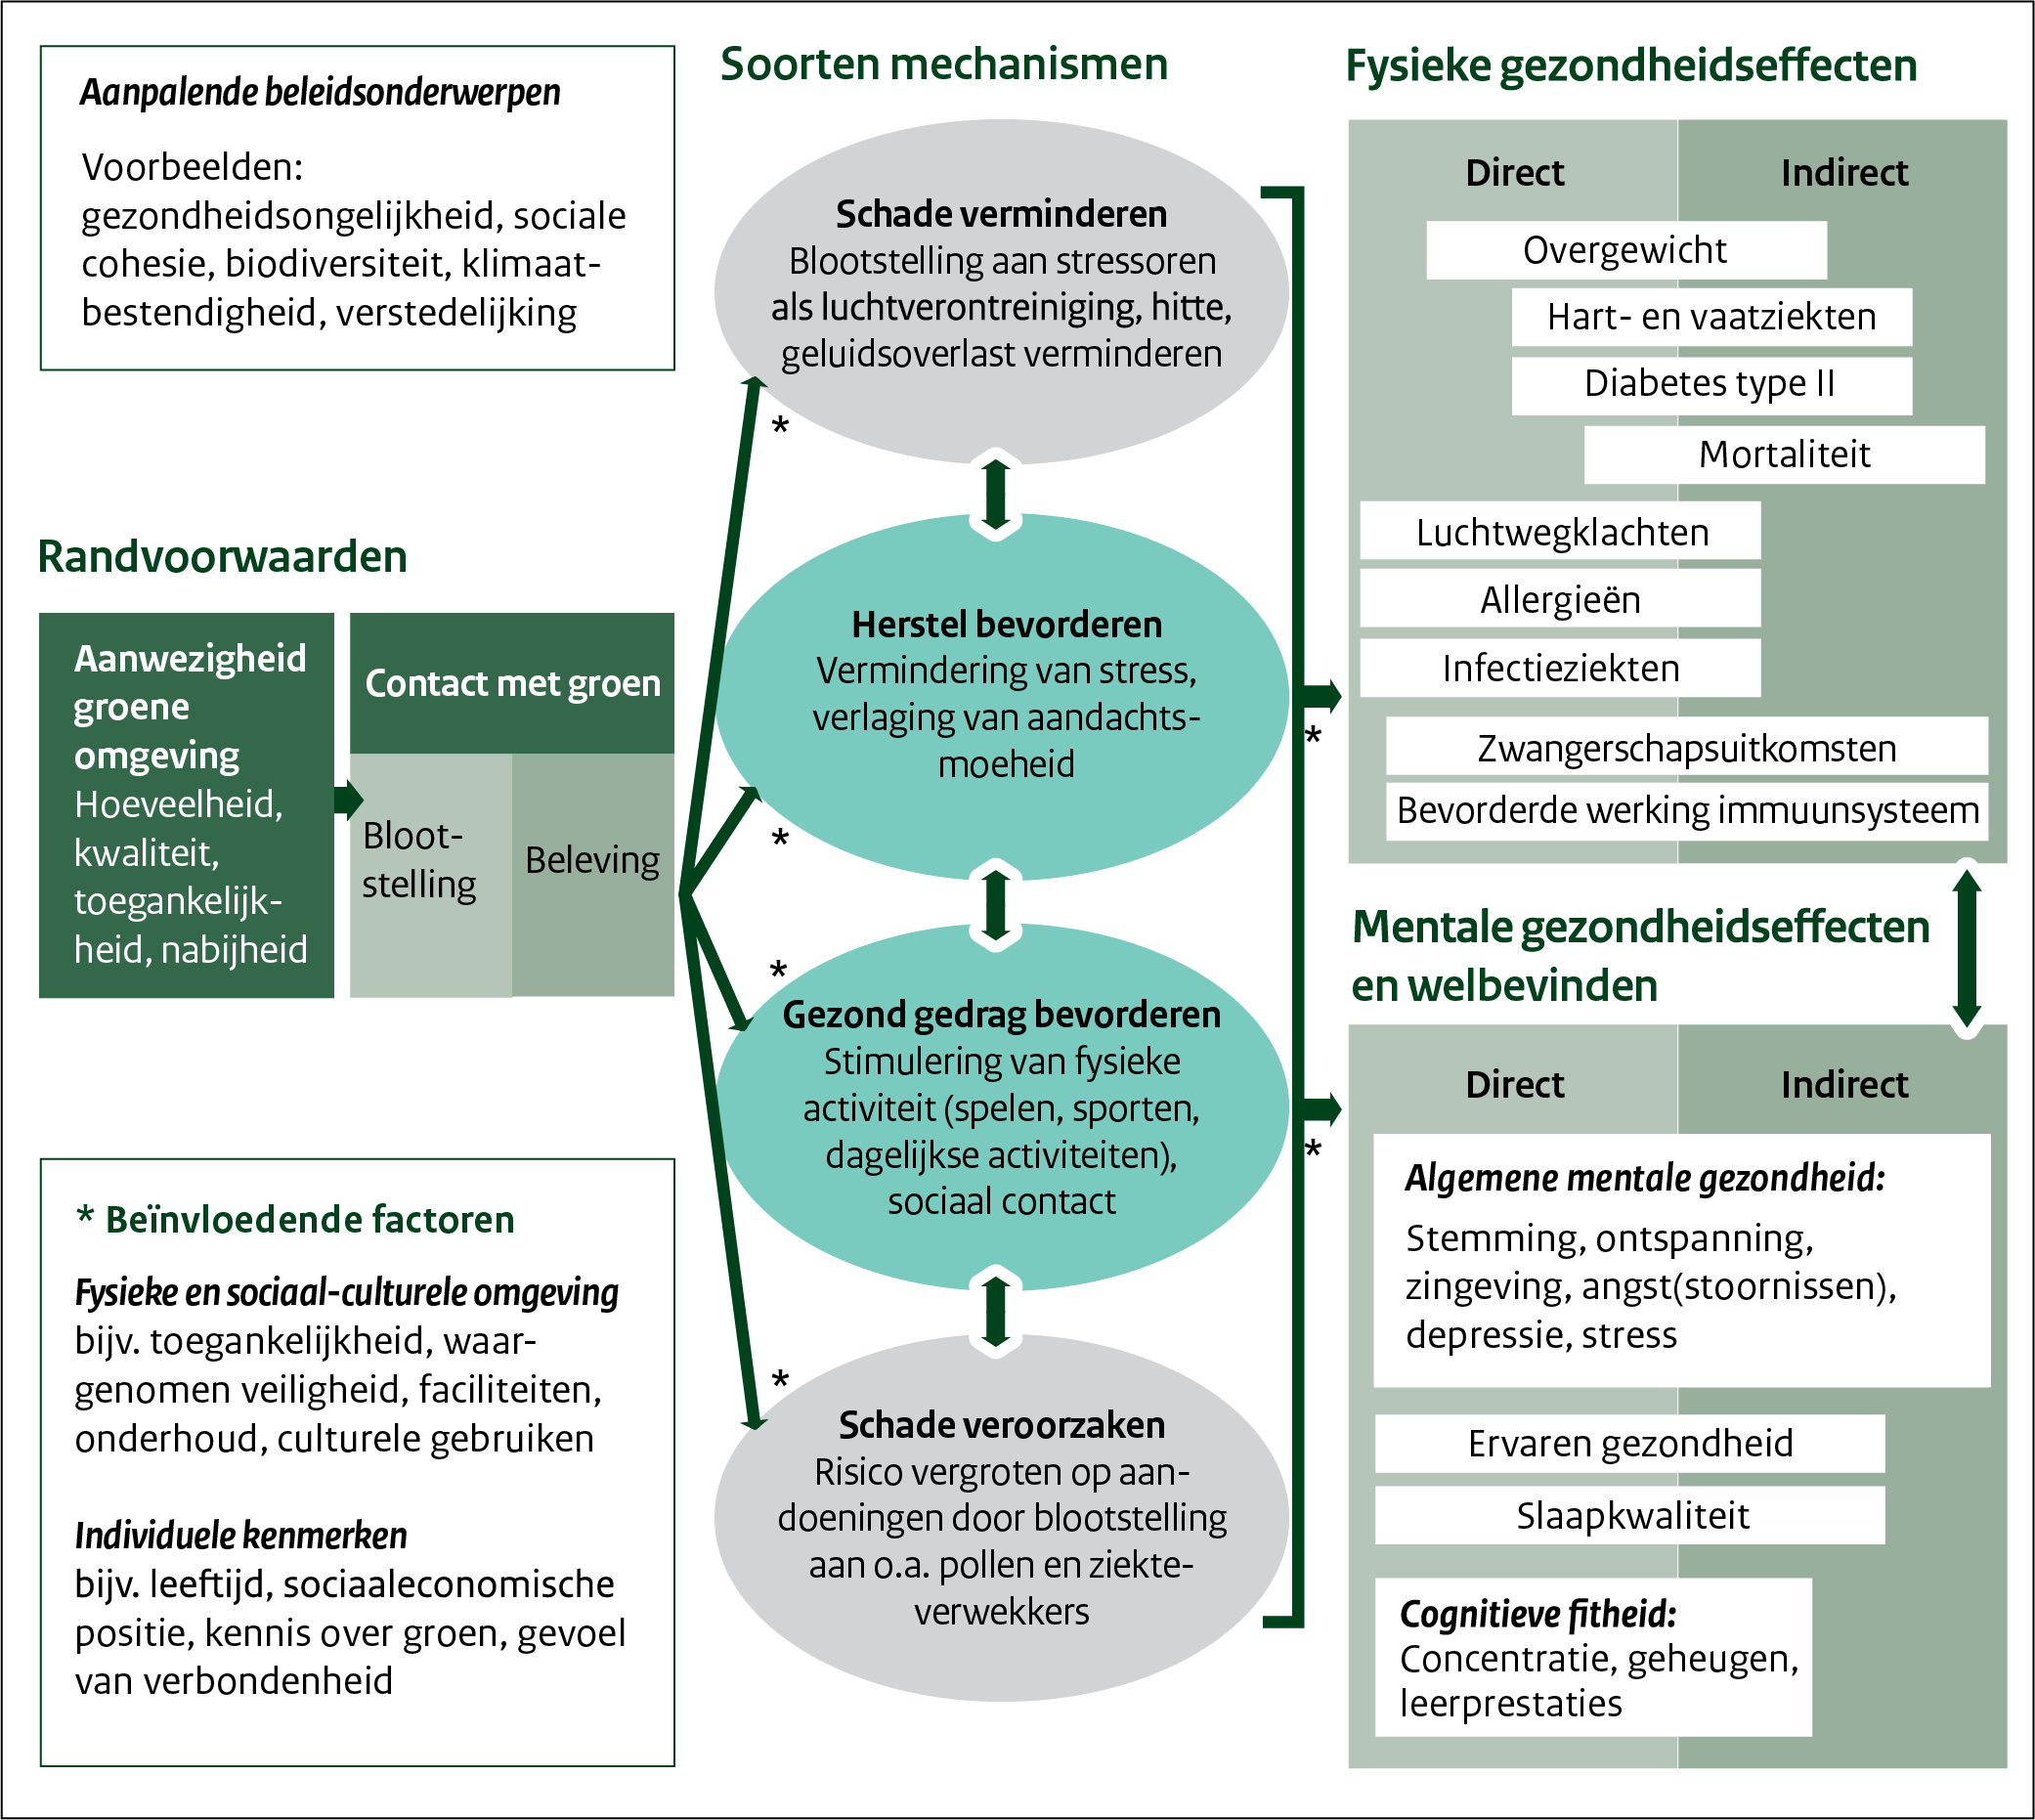 Dit conceptueel model van de effecten van groen op gezondheid laat schematisch zien welke effecten groen kan hebben op gezondheid en welbevinden en welke mechanismen daaraan ten grondslag liggen